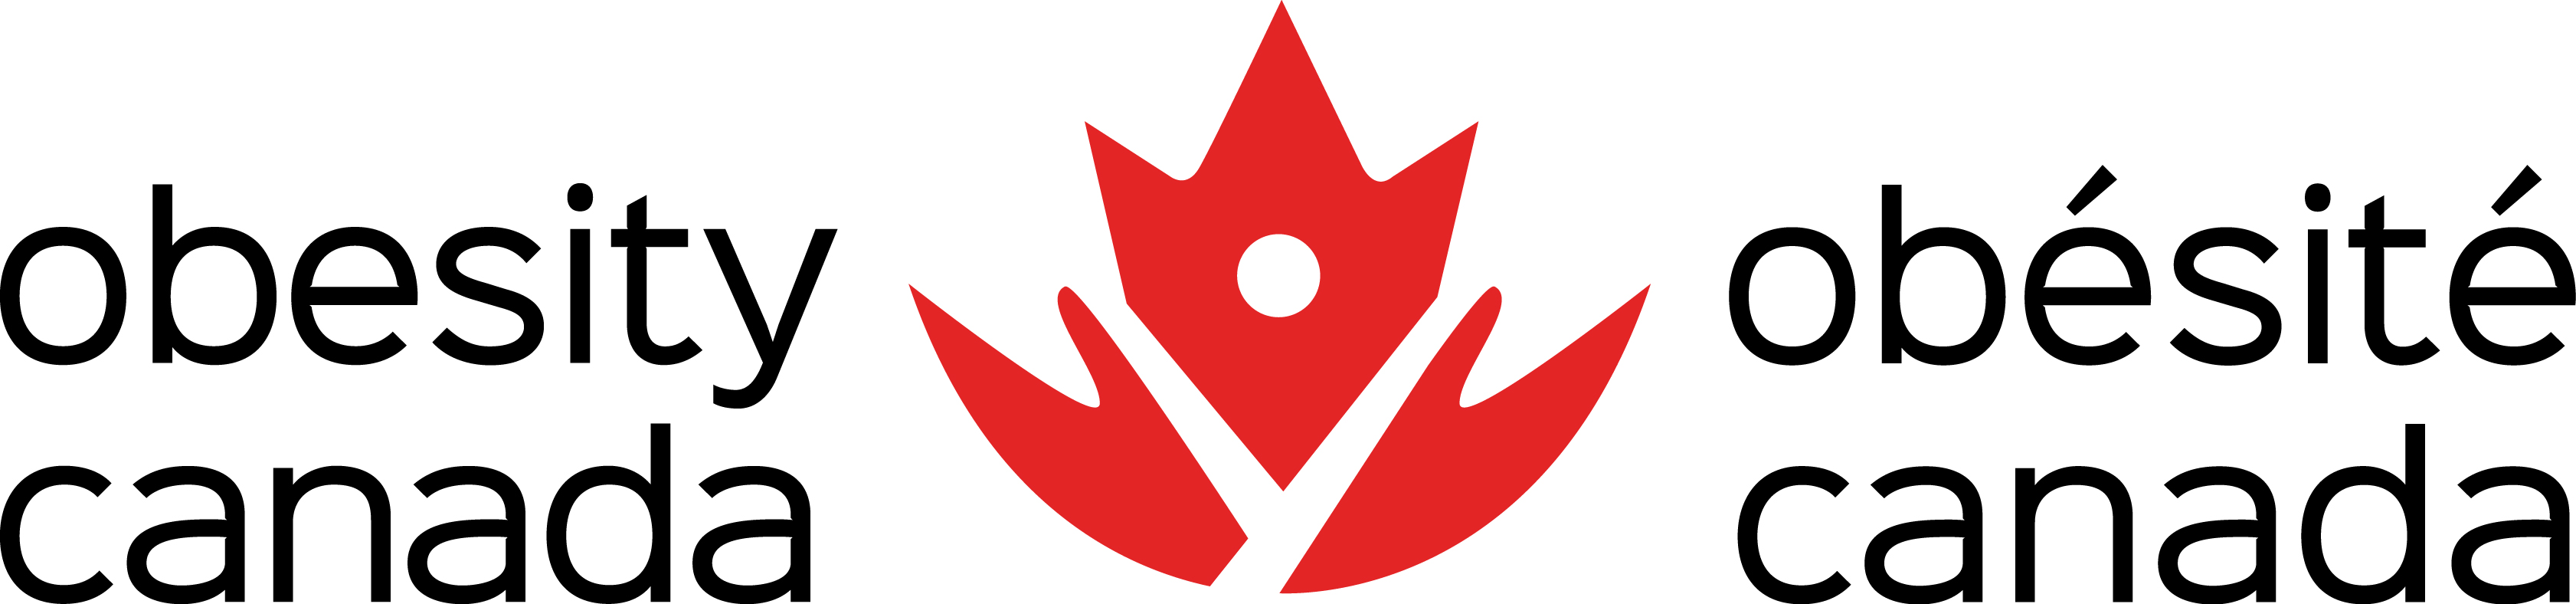 Obesity Canada logo-en-fr-hor-vert-F2.jpg